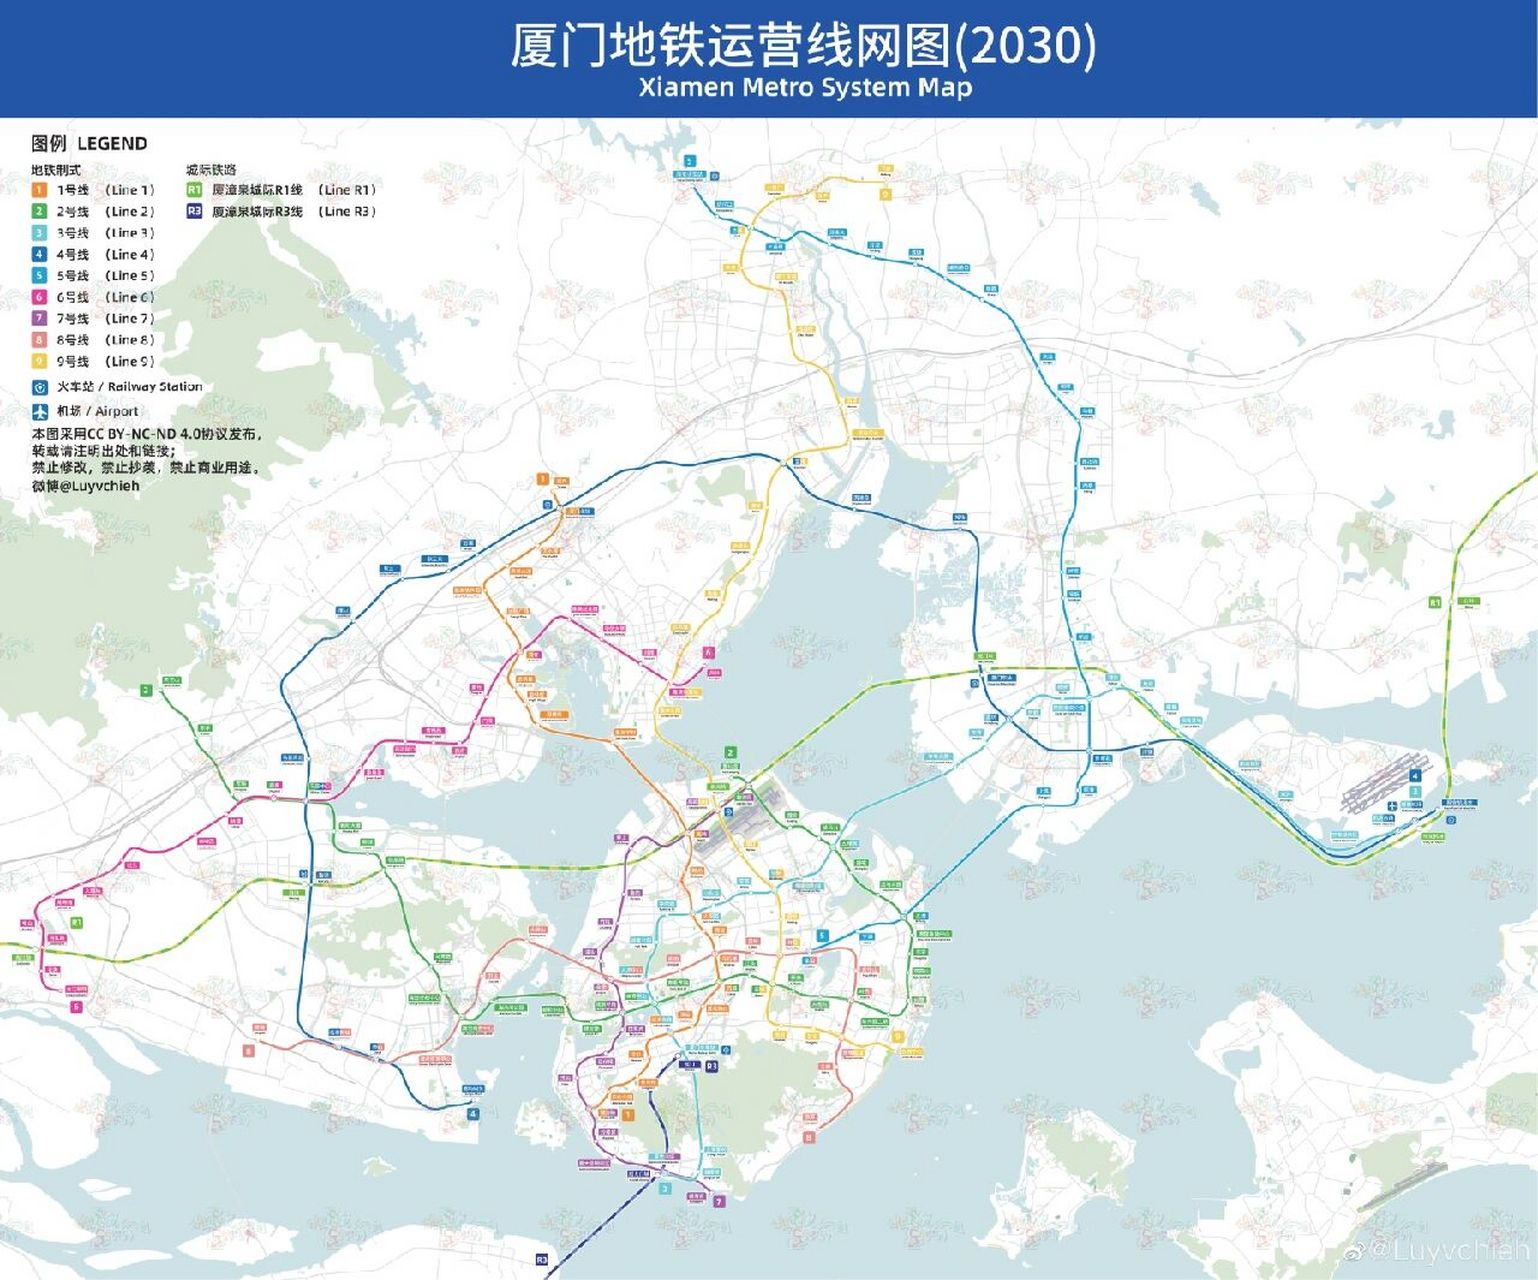 厦门地铁2040年规划和2030年地铁规划对比 厦门地铁2040年规划,与第